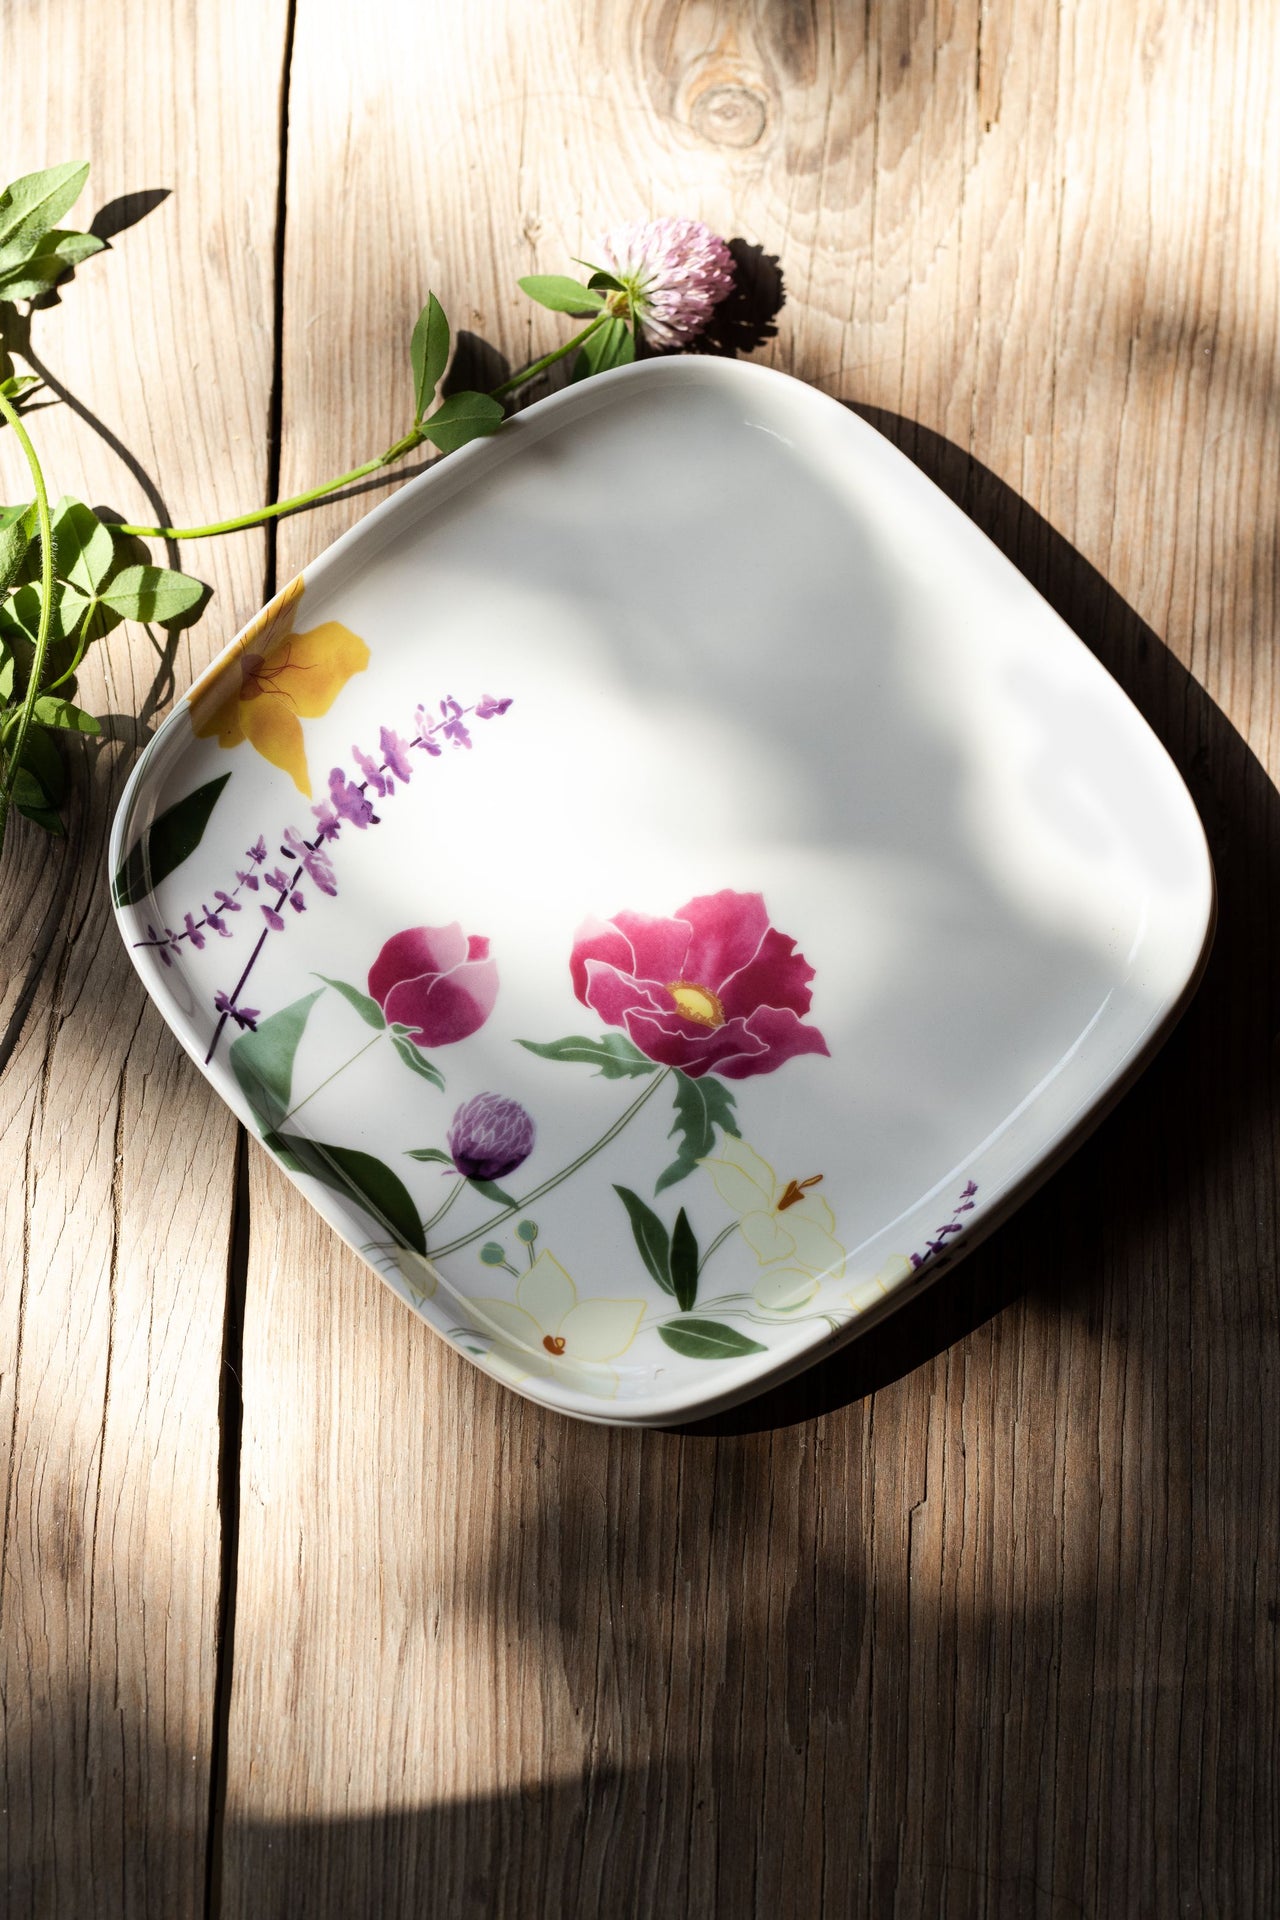 Floral Design Cup | Floral Design Plate